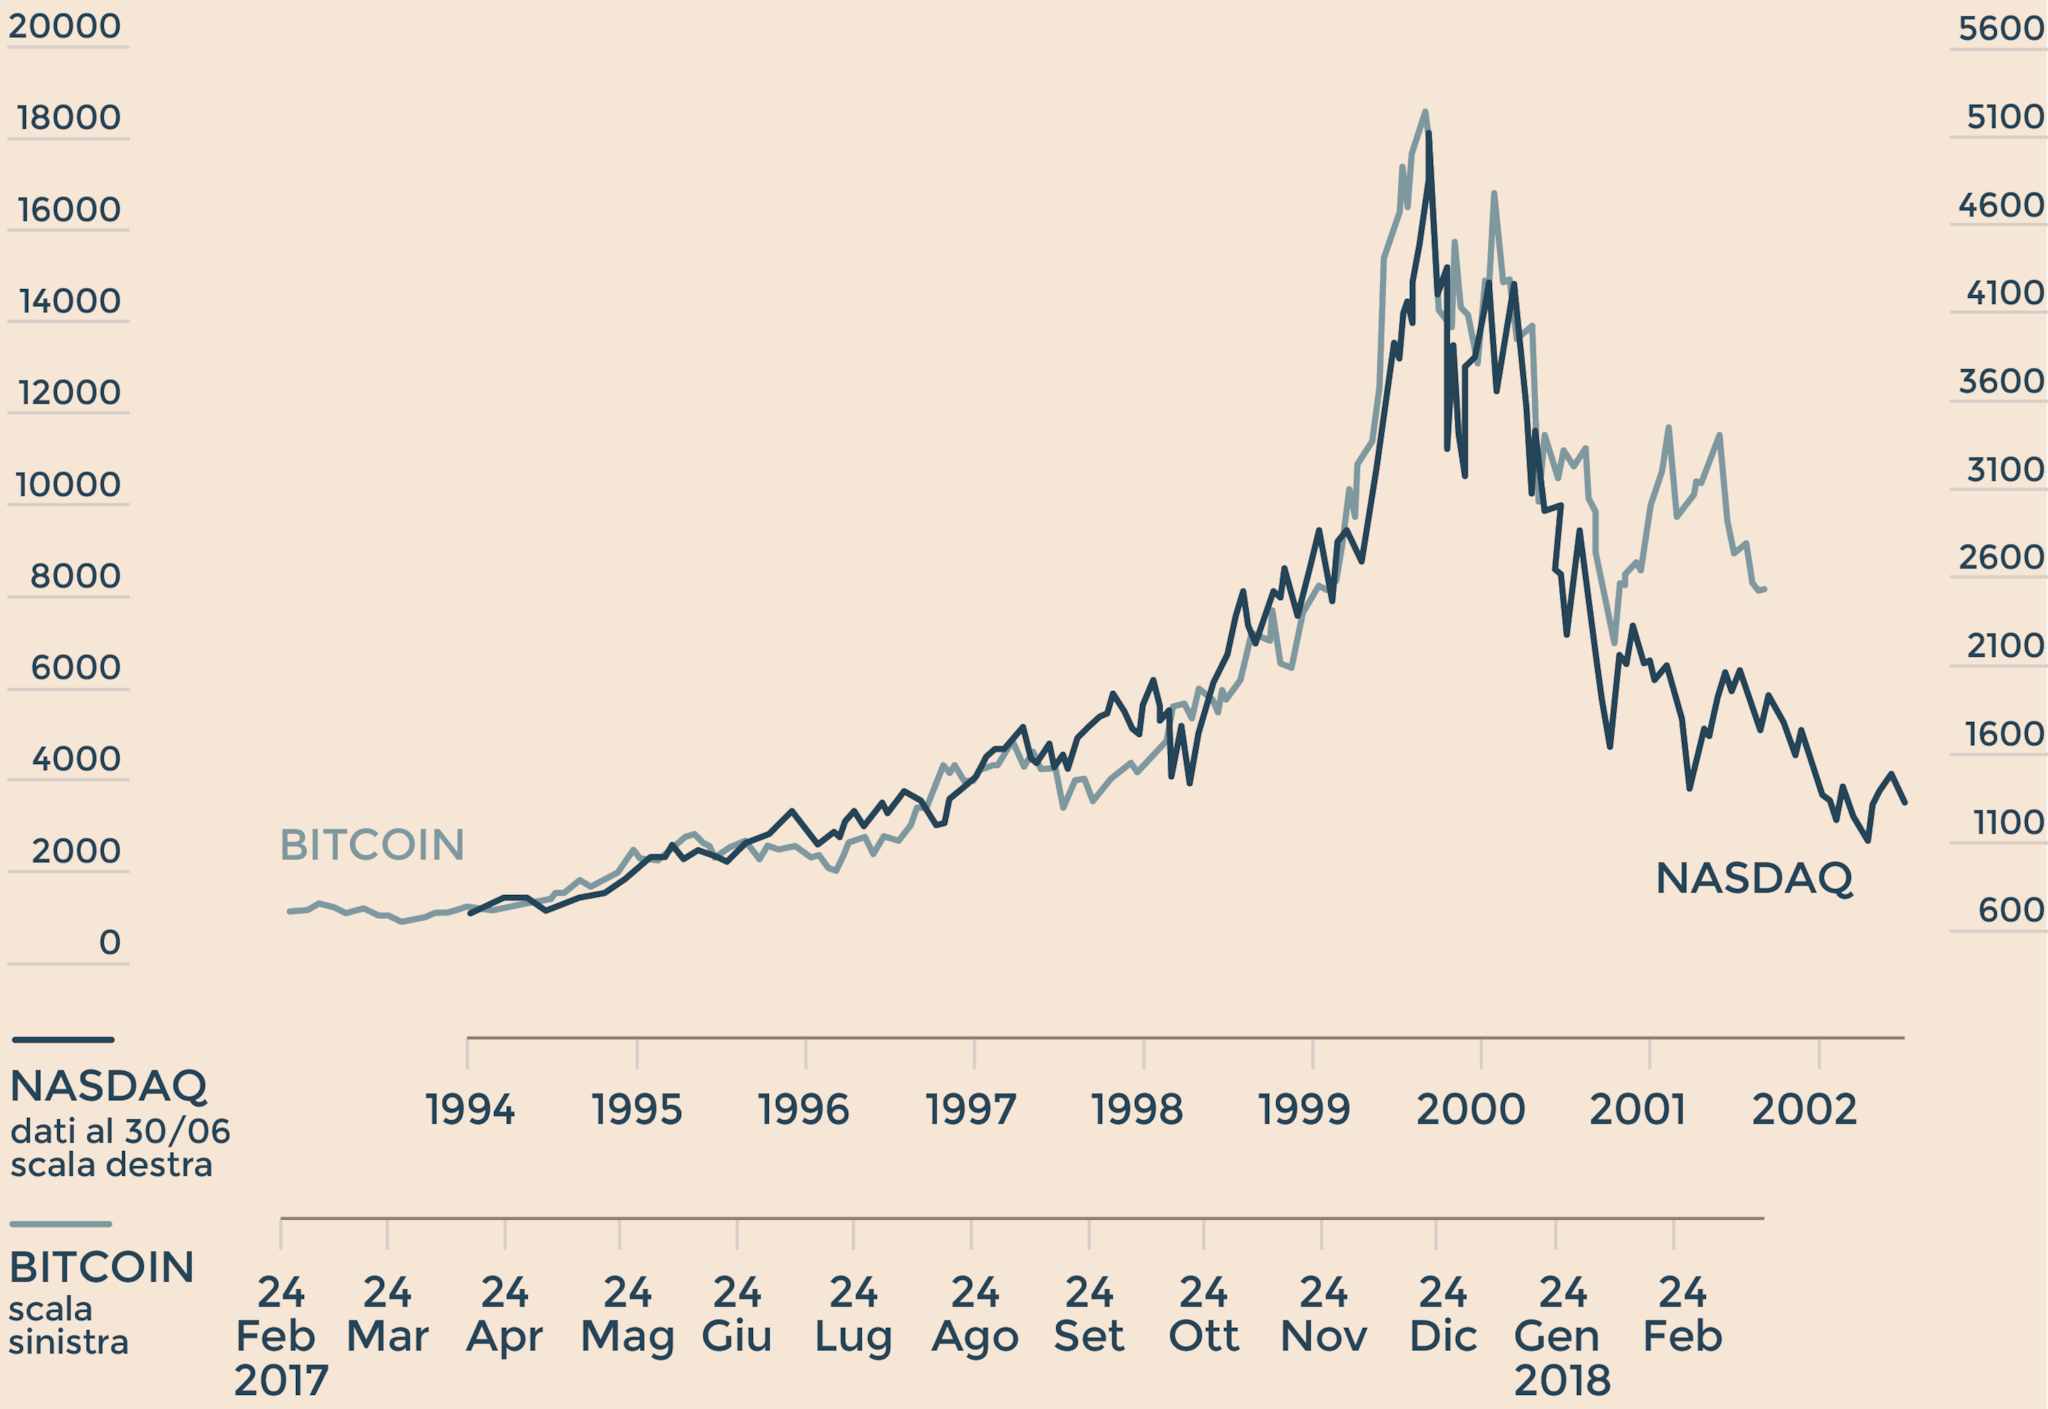 dati storici di mercato bitcoin